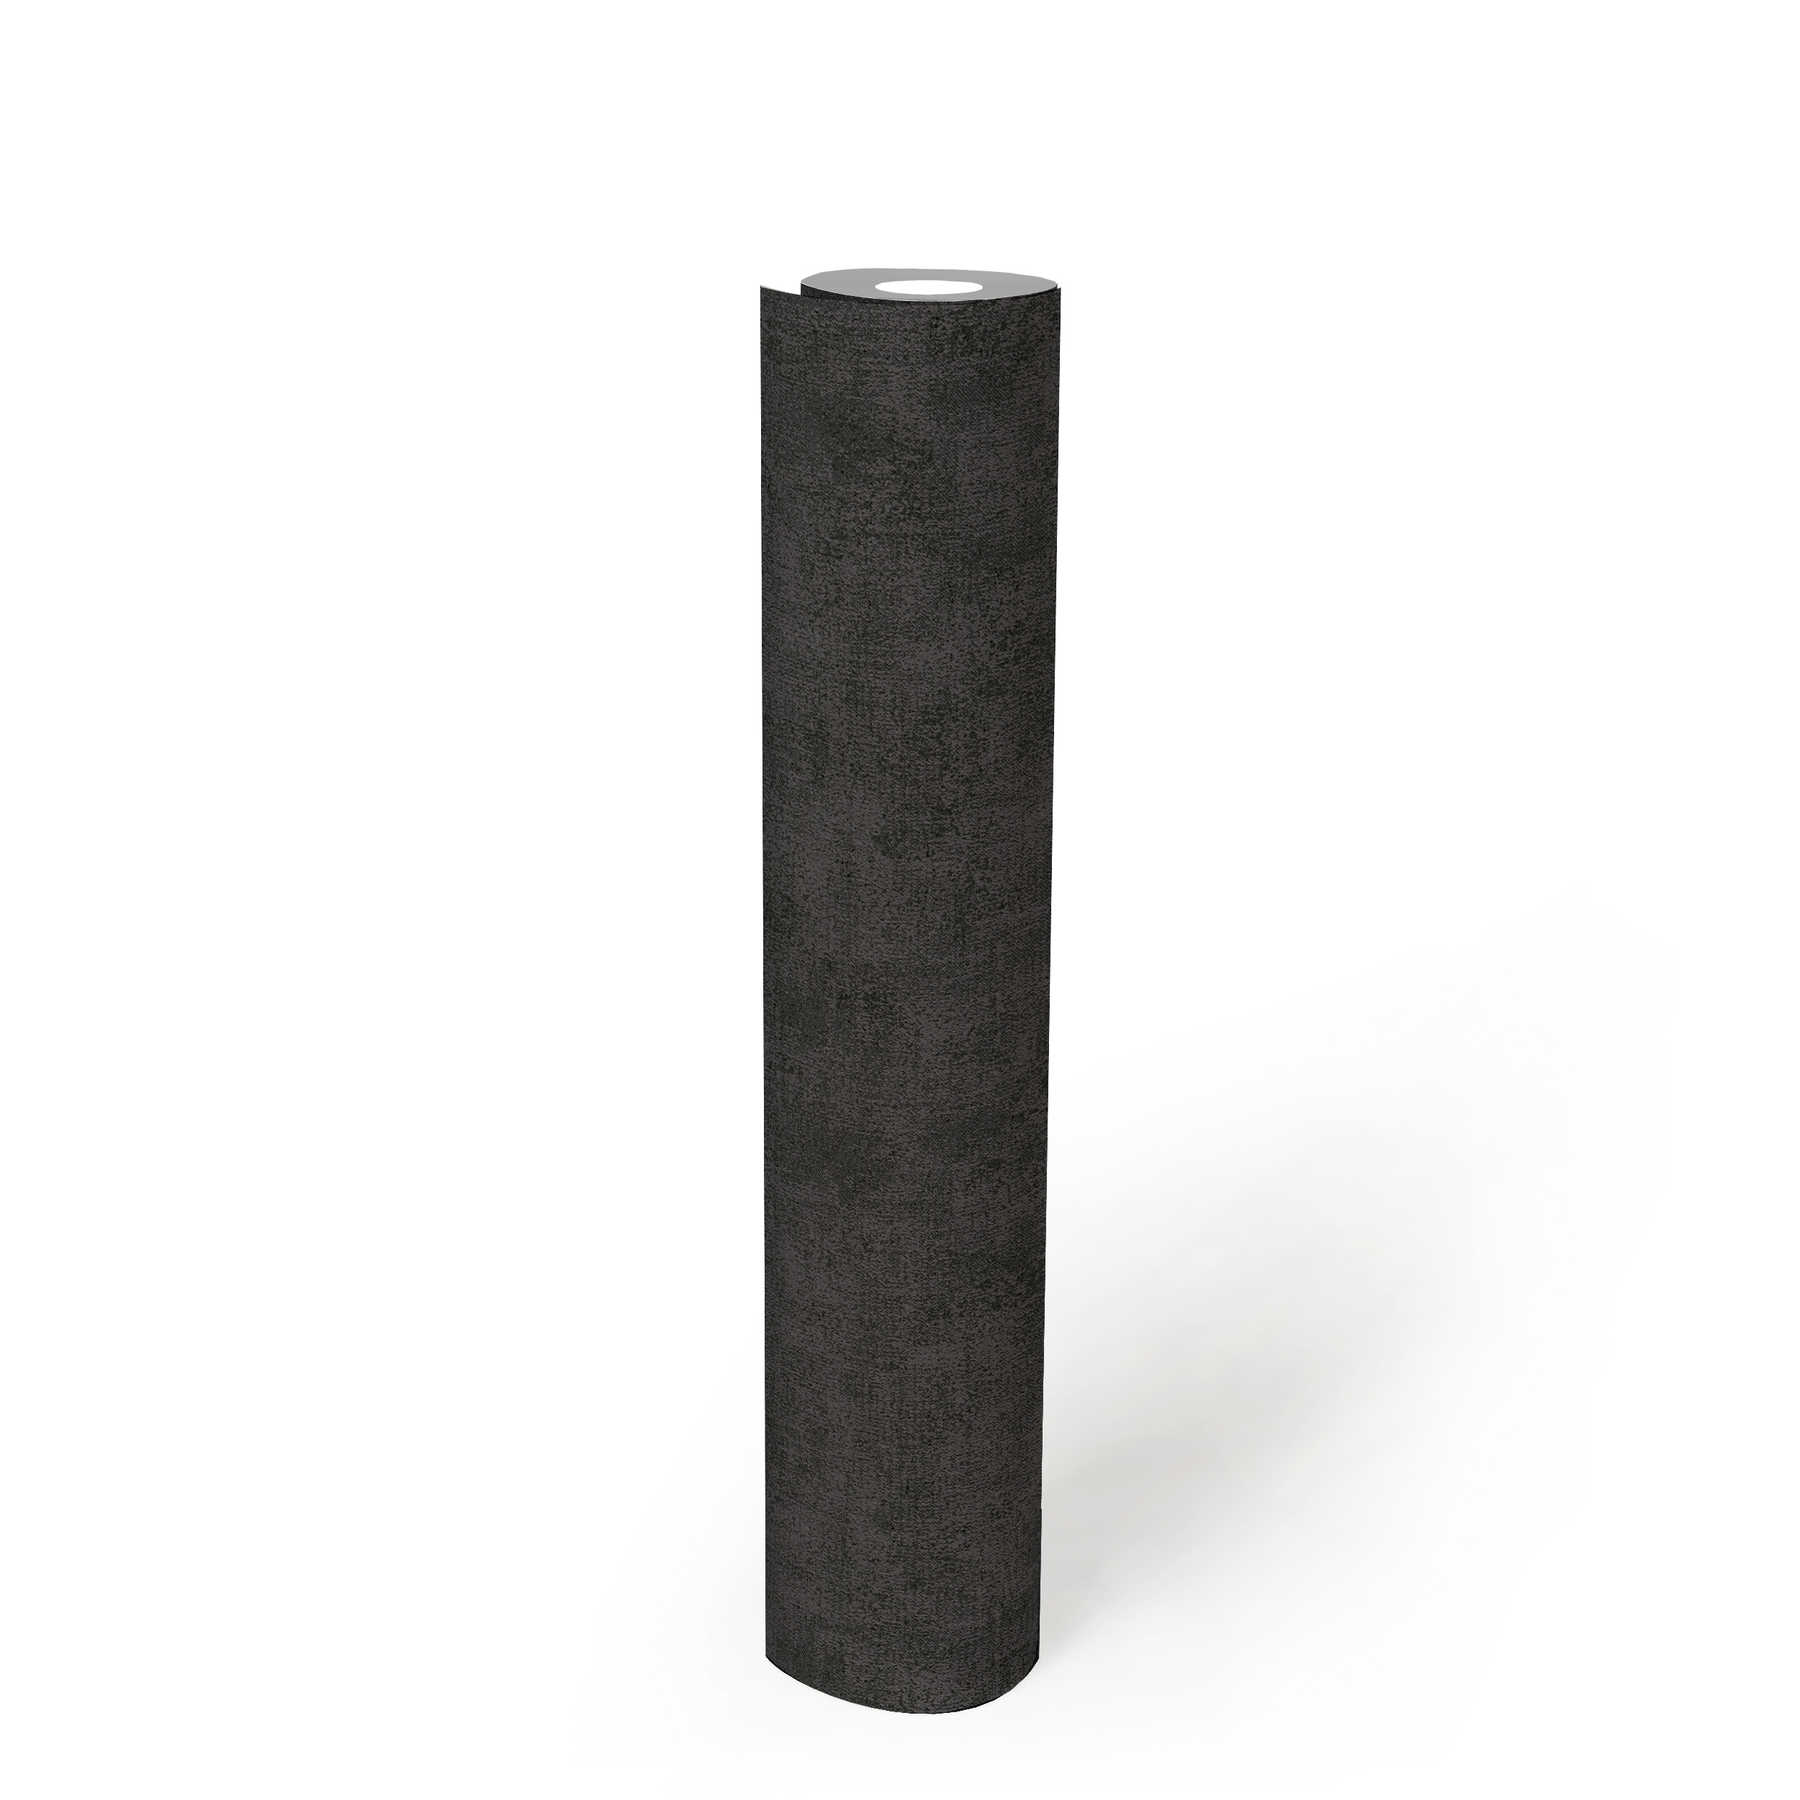             Effen behang met gevlekte structuur look - zwart
        